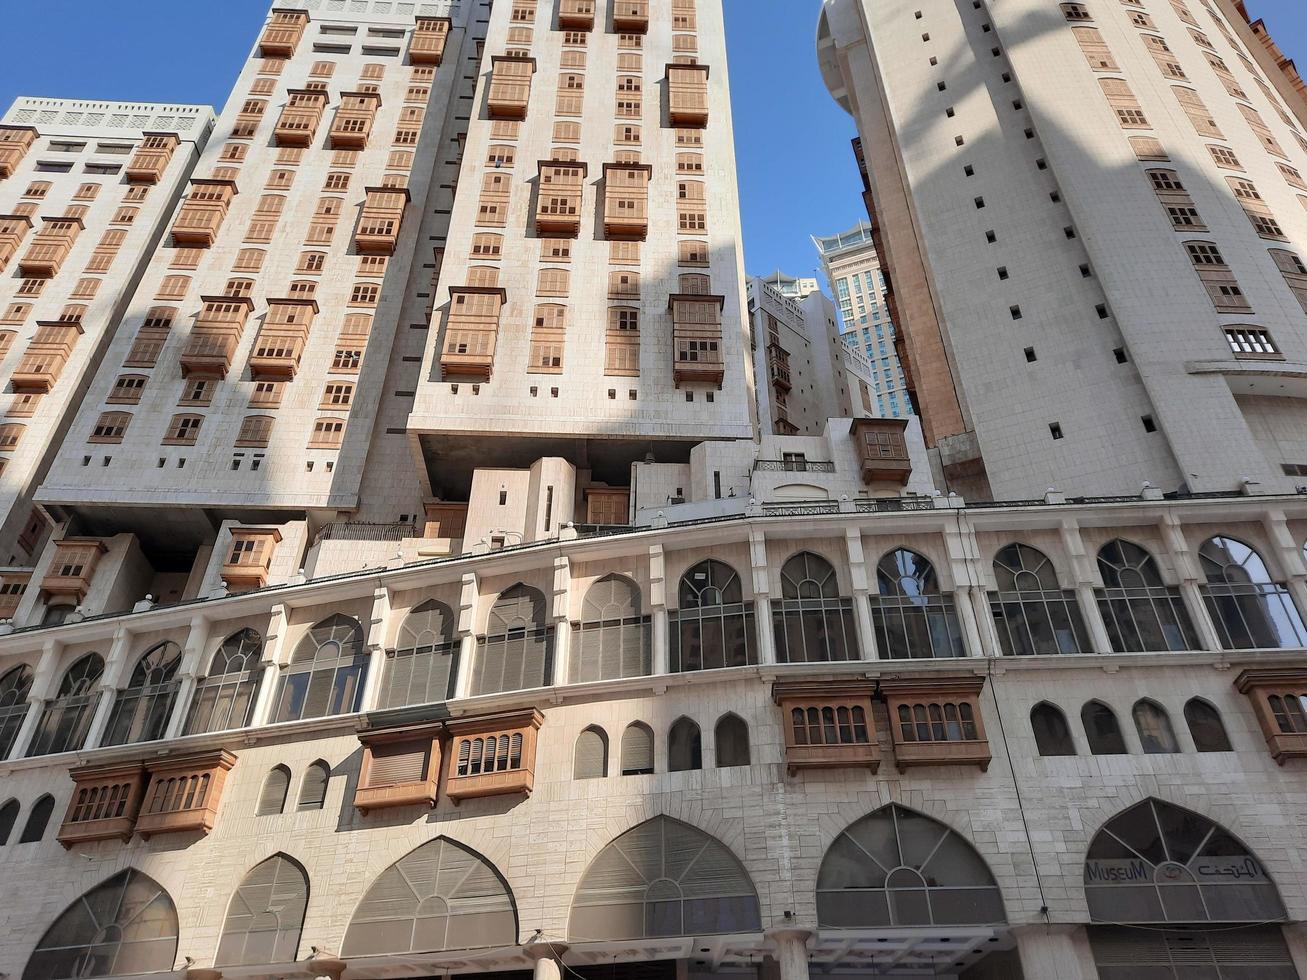 meca, arábia saudita, novembro de 2022 - bela vista de edifícios residenciais e hotéis em frente a masjid al haram, meca, arábia saudita. foto